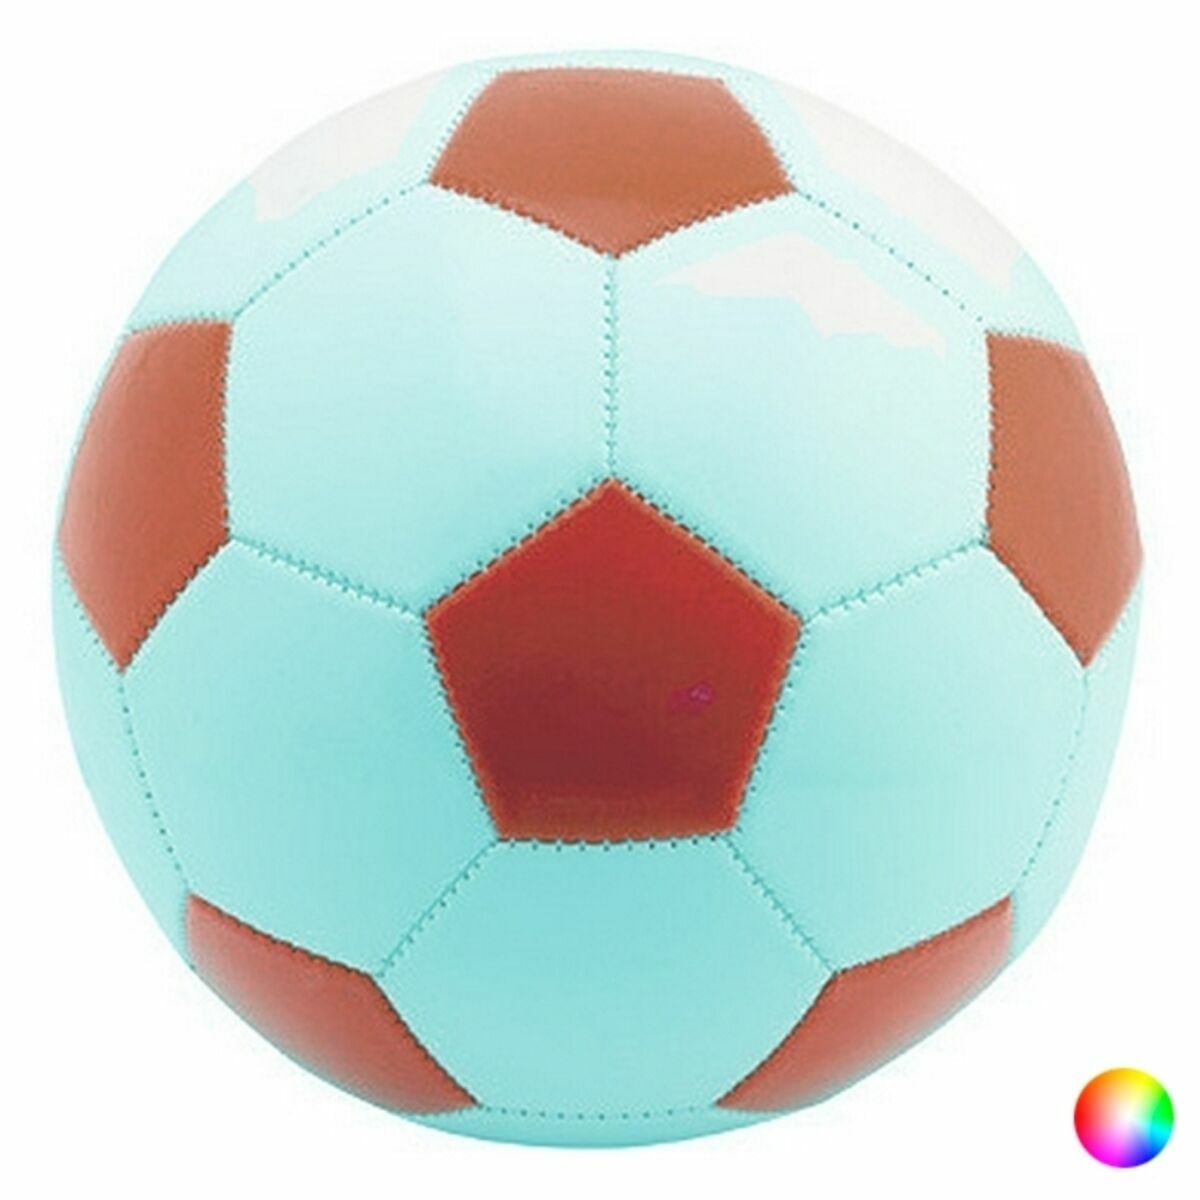 Pallone Da Calcio 144086 (40 Unità) Colore:bianco